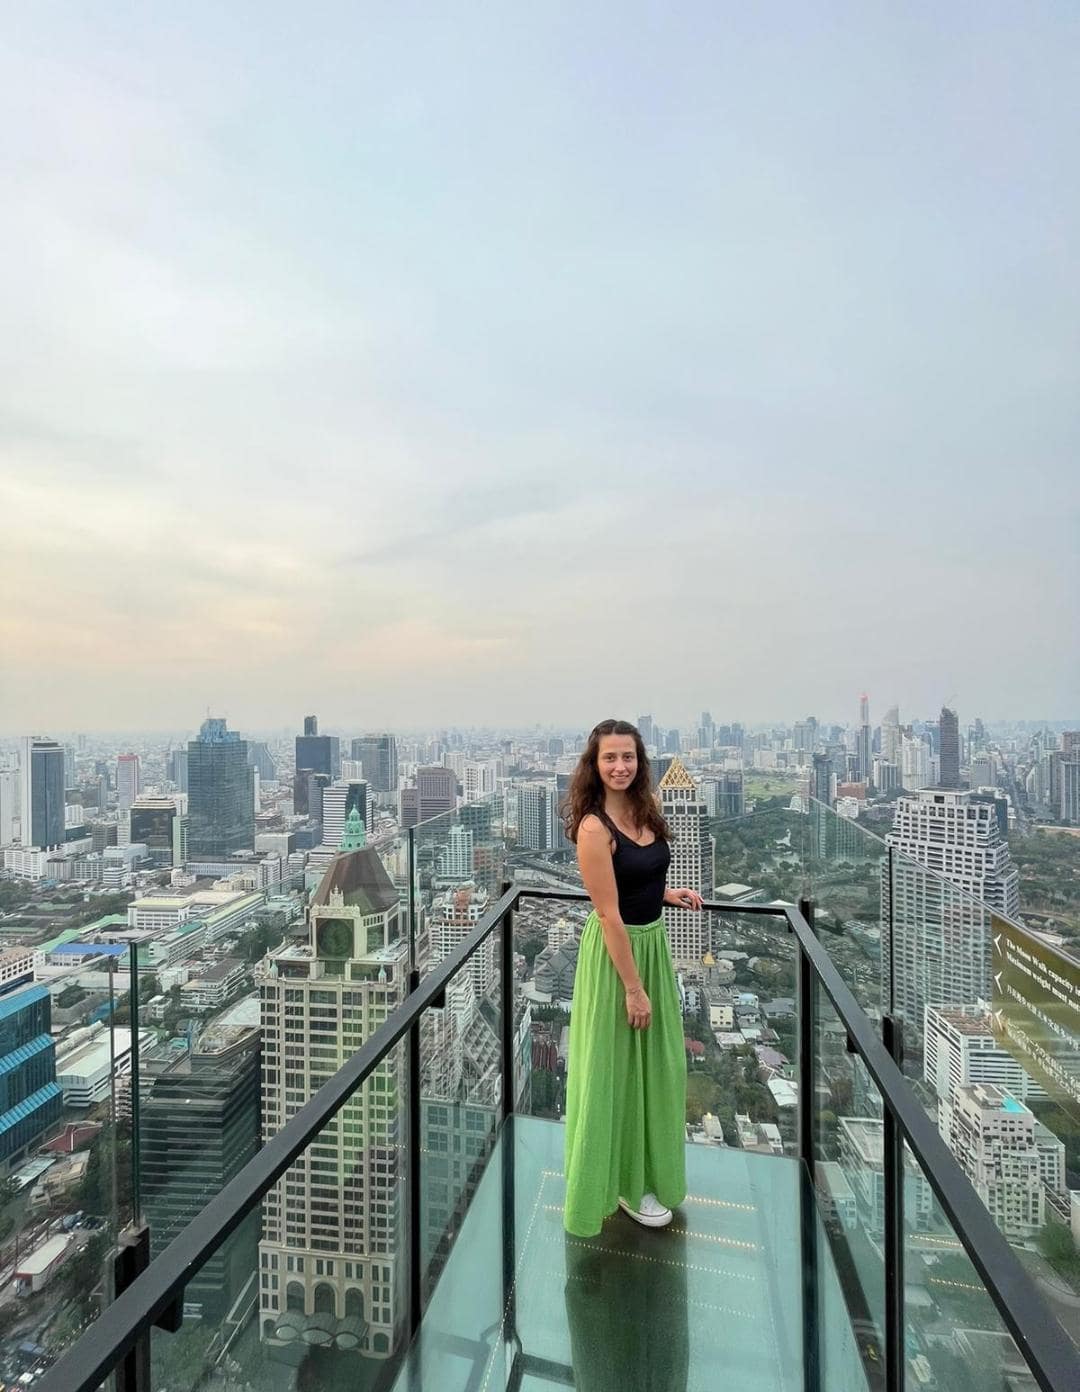 Dievča stojace na streche mrakodrapu v Bangkoku. Za ňou sa rozlieha veľké mesto.